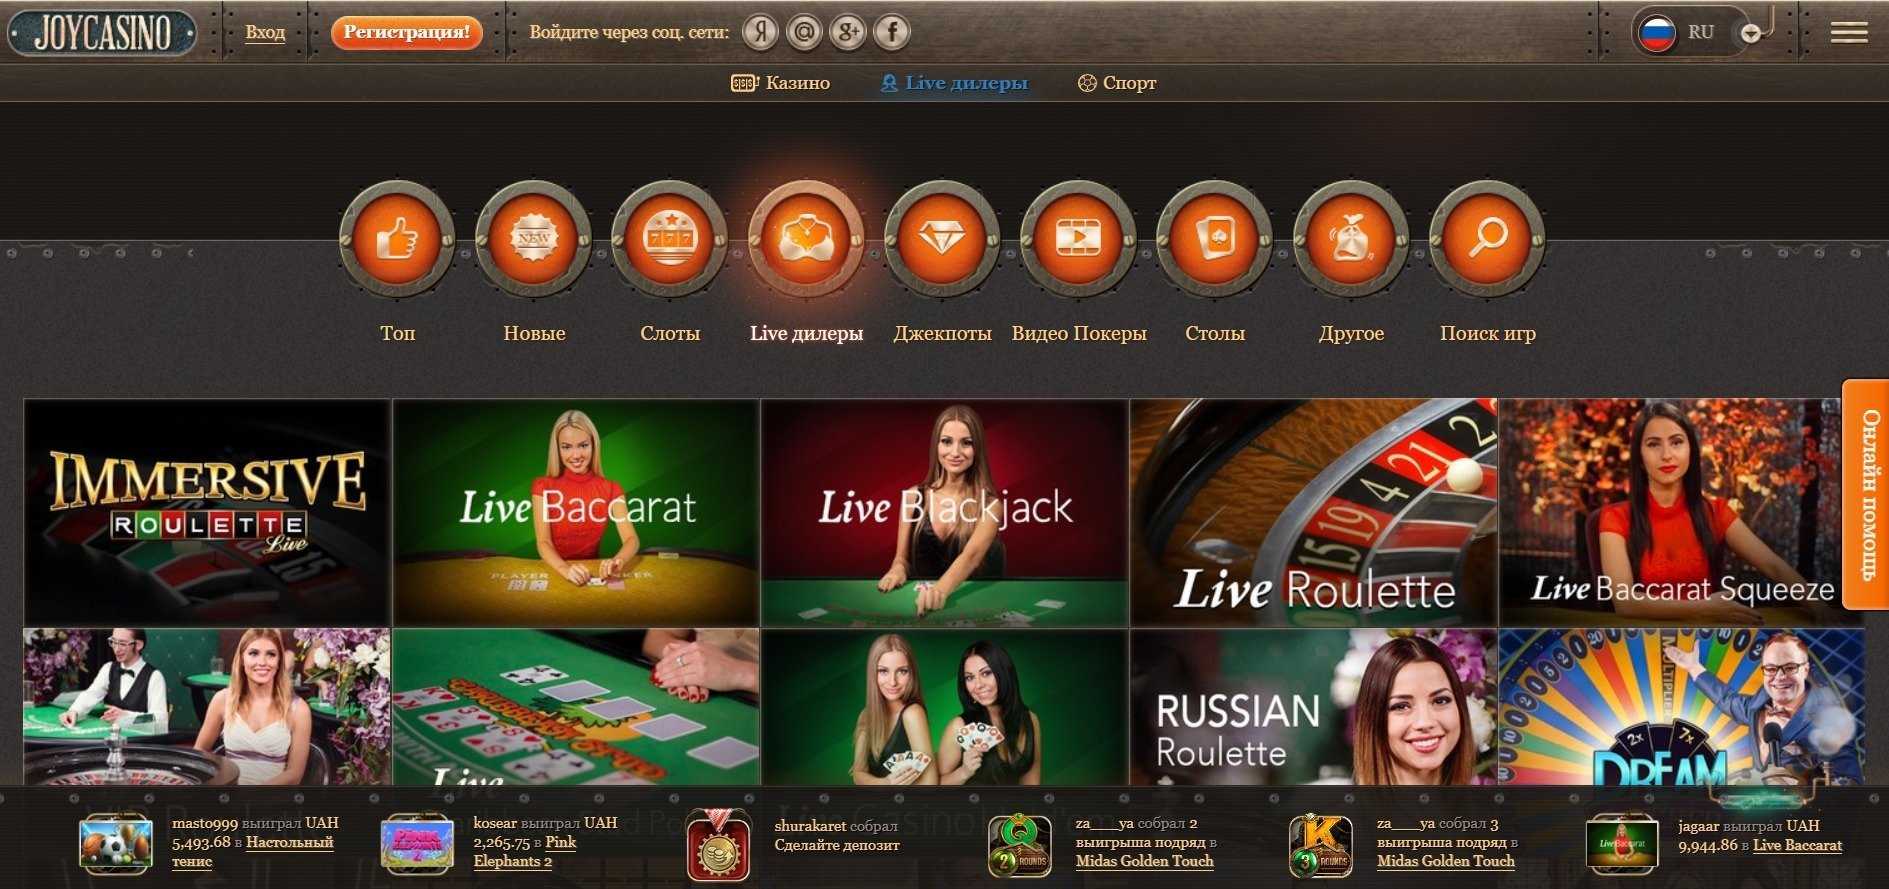 Новое зеркало joycasino сайта работающее joycasino5 name стаффрум работа в казино